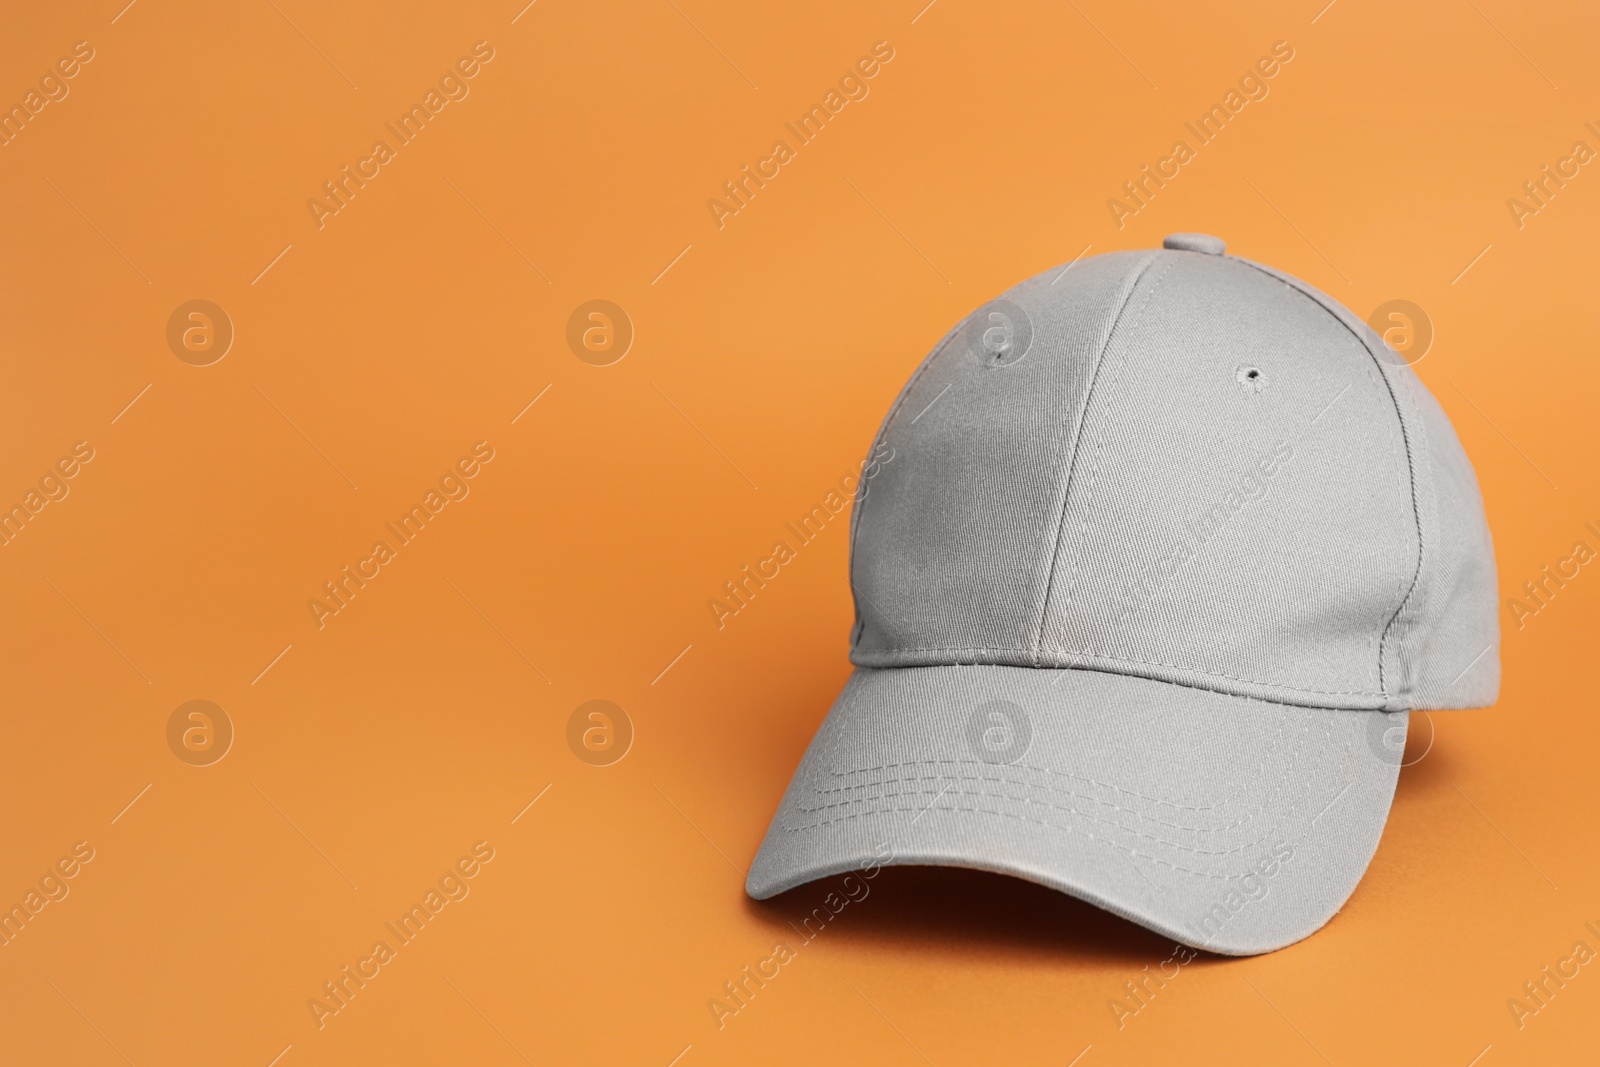 Photo of Stylish grey baseball cap on orange background. Space for text